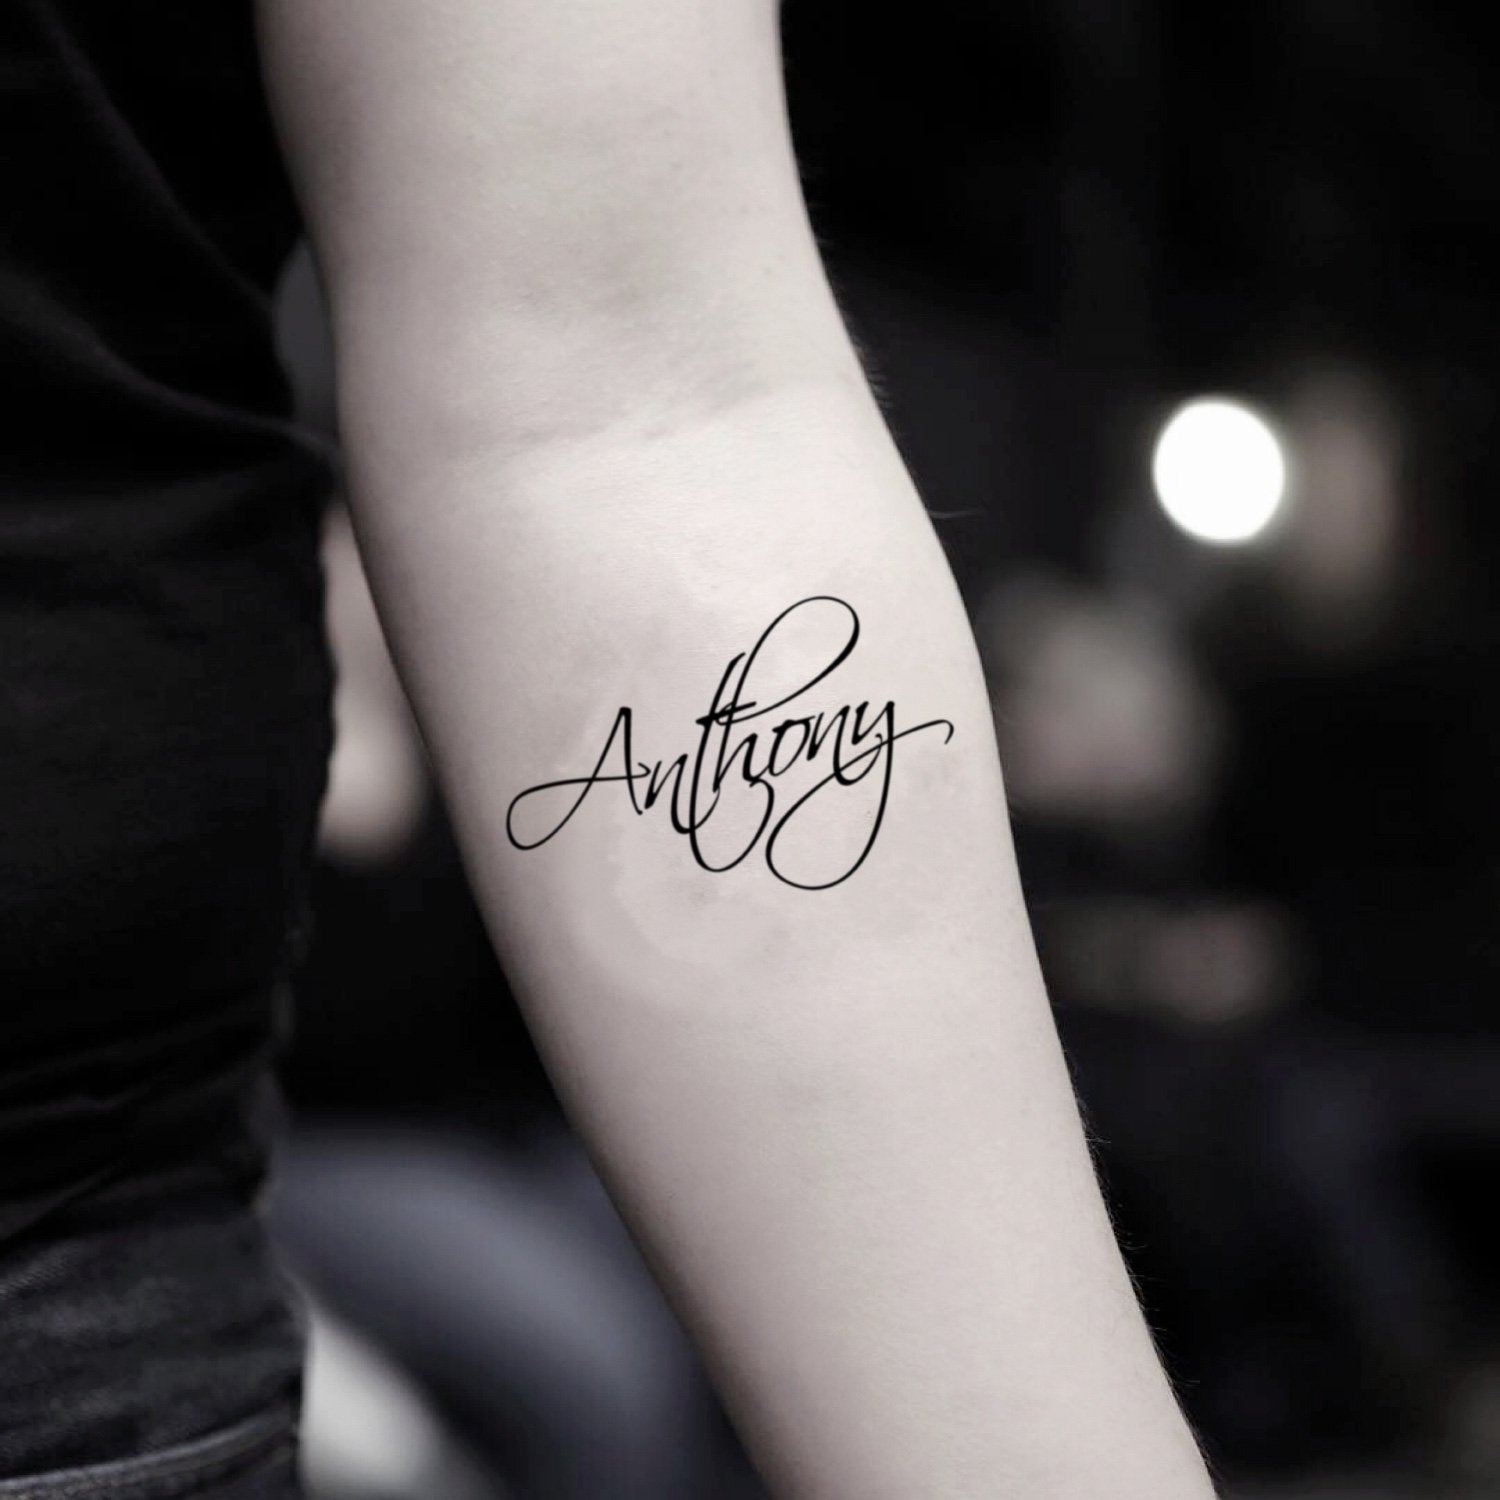 Anthony Name Tattoo Designs  Name tattoos Name tattoo designs Name tattoo